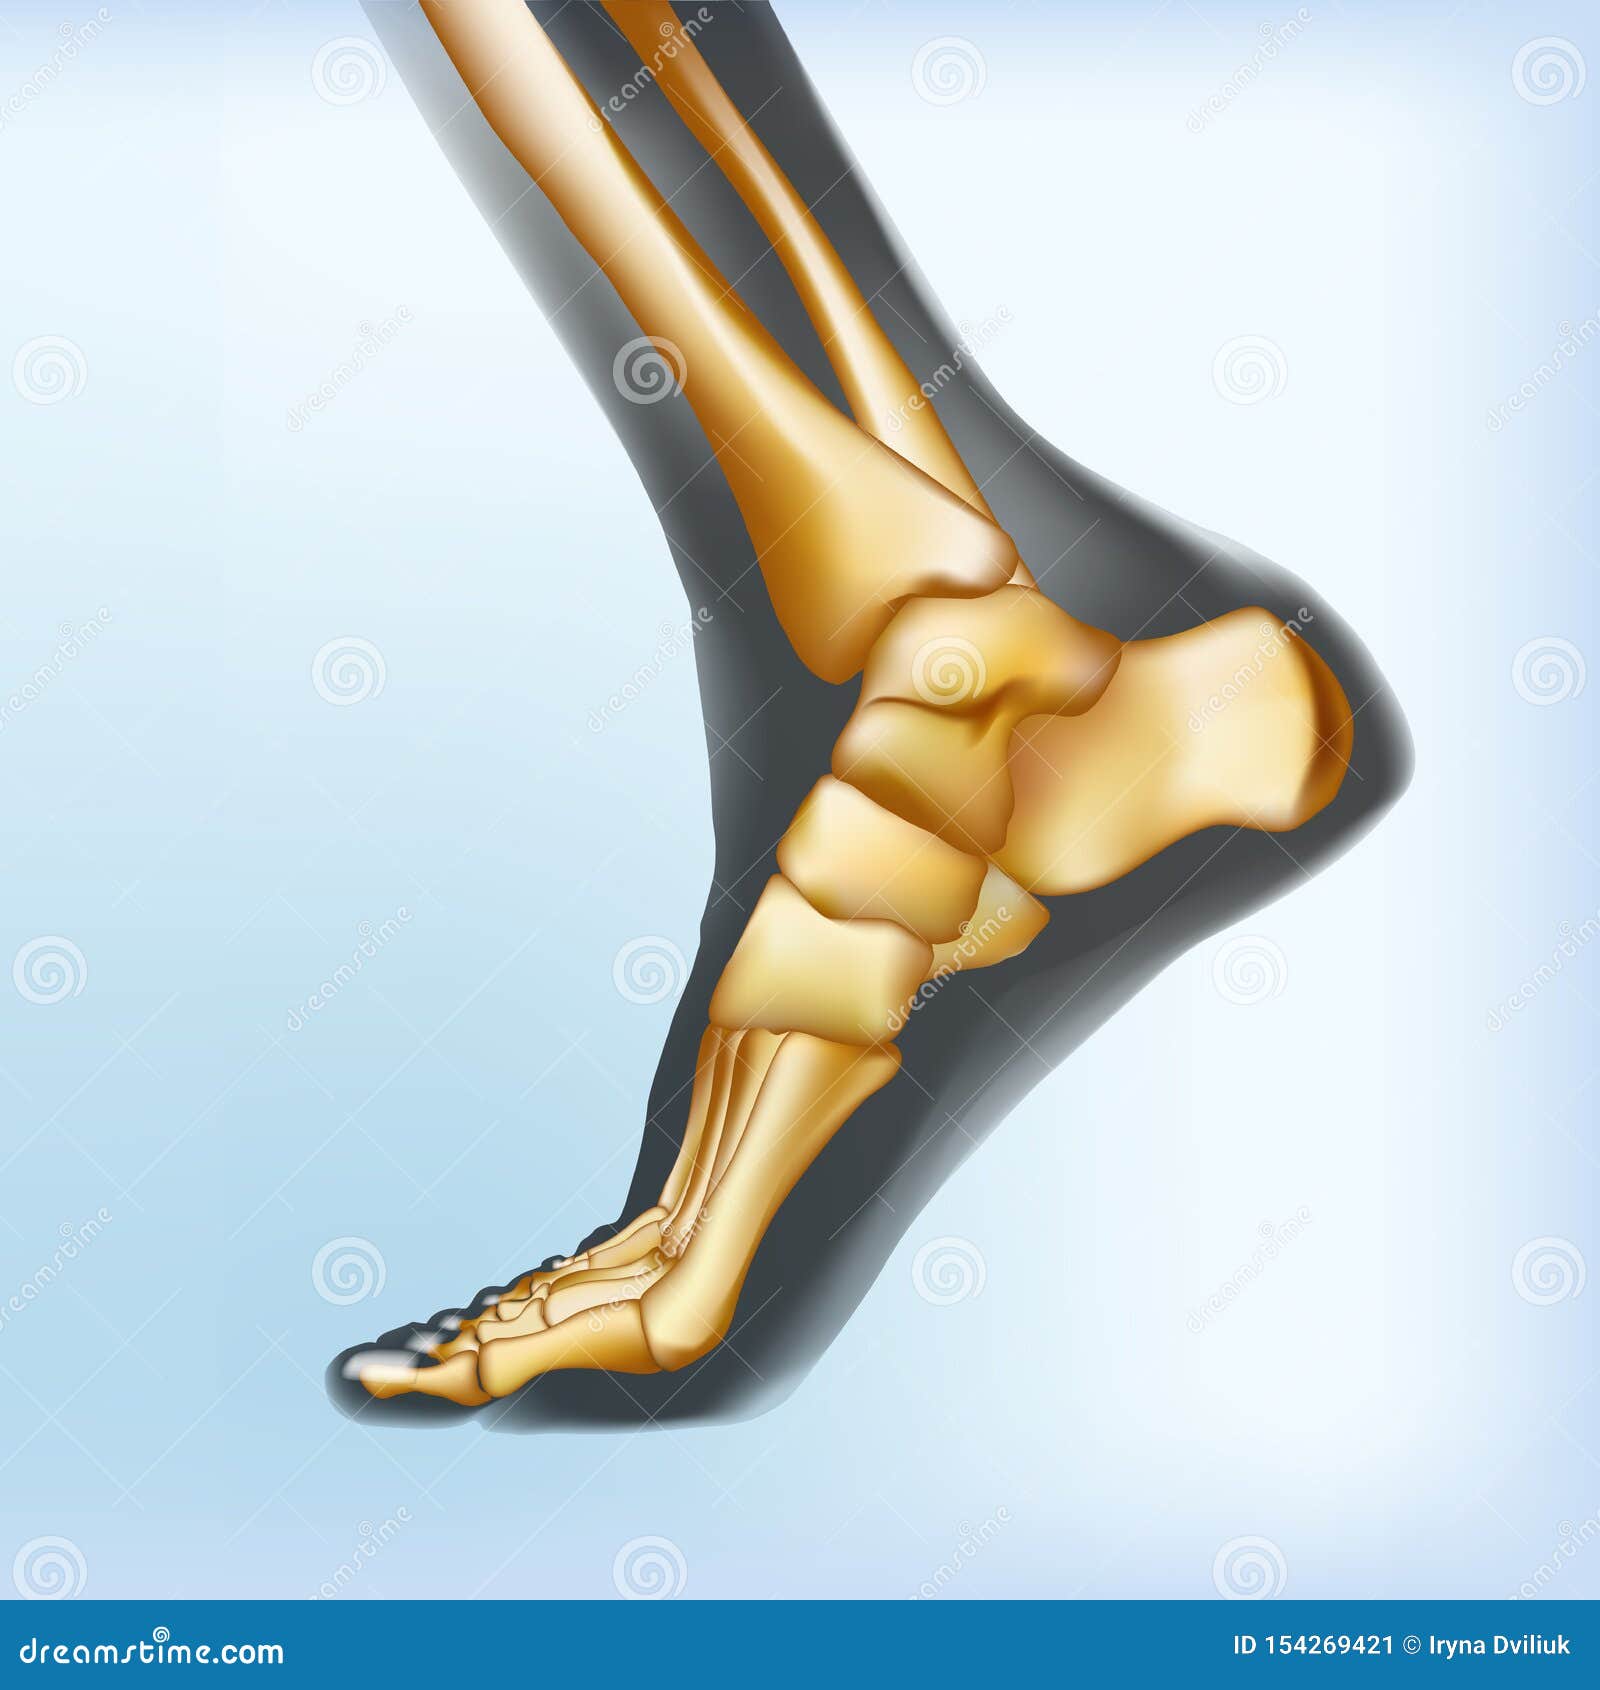 naturalistic visualization of bones of foot.